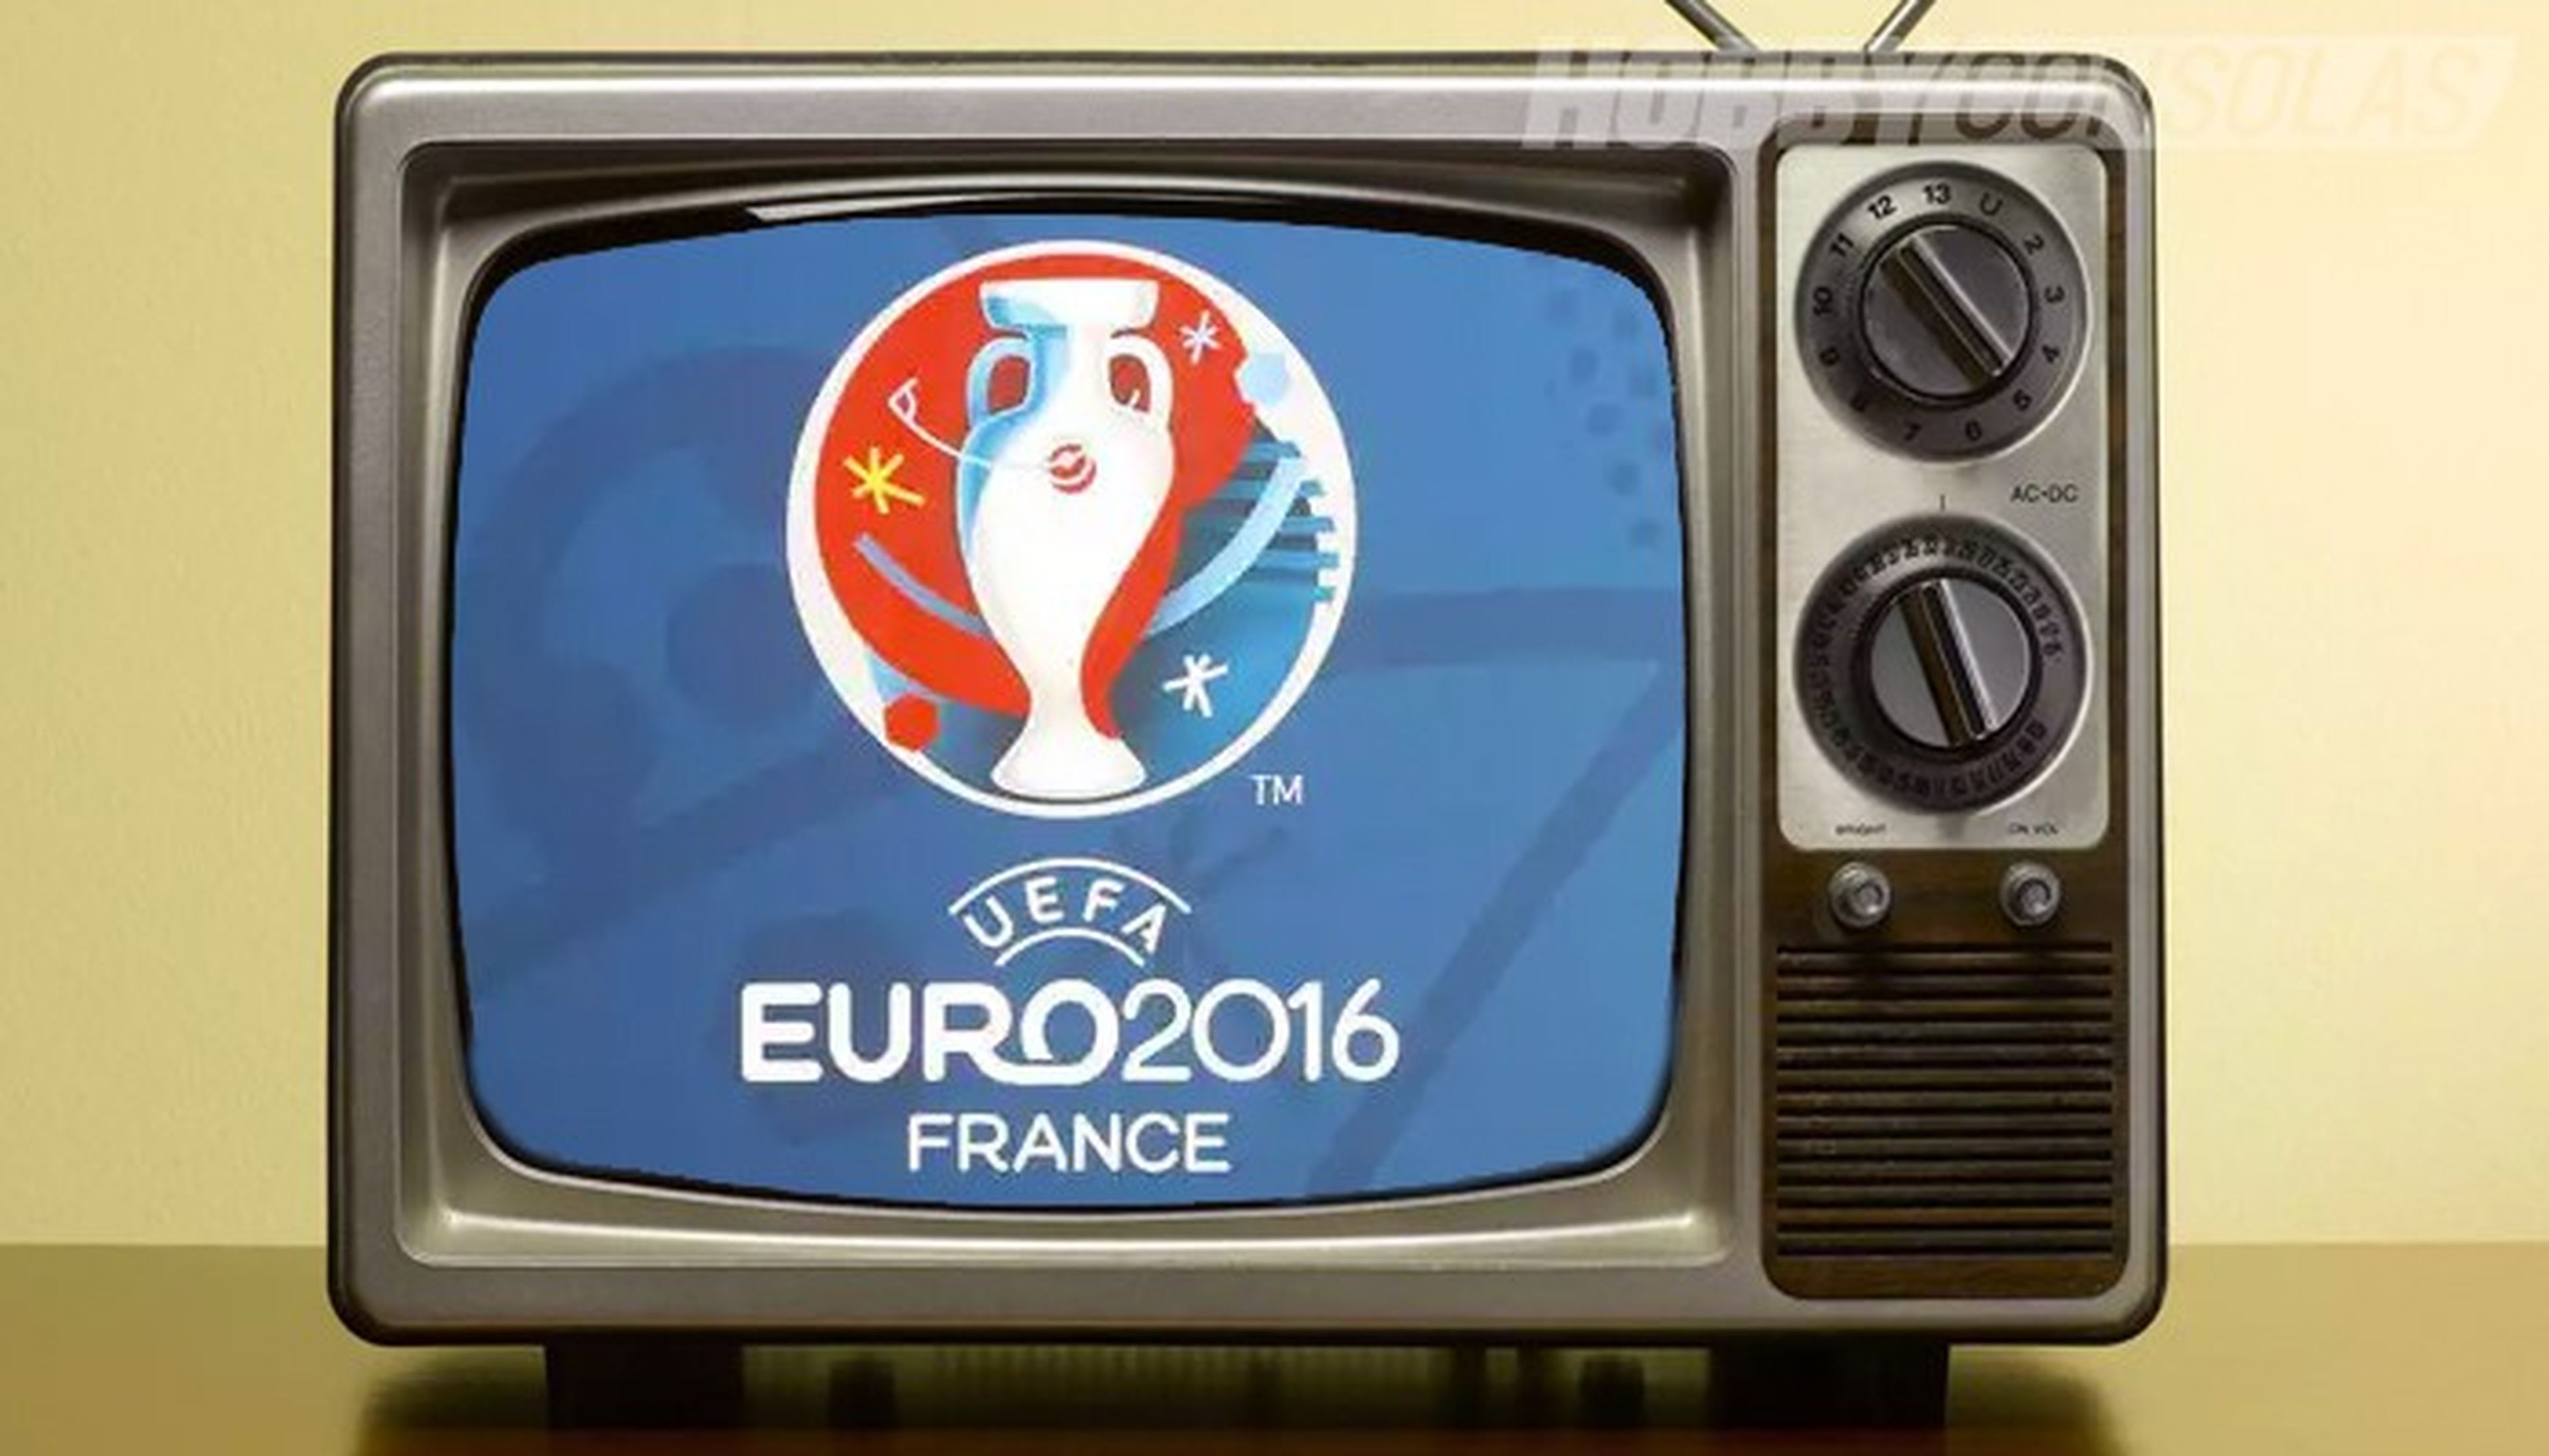 Eurocopa 2016, cómo ver online todos los partidos gratis por streaming oficial de la UEFA (tutorial)